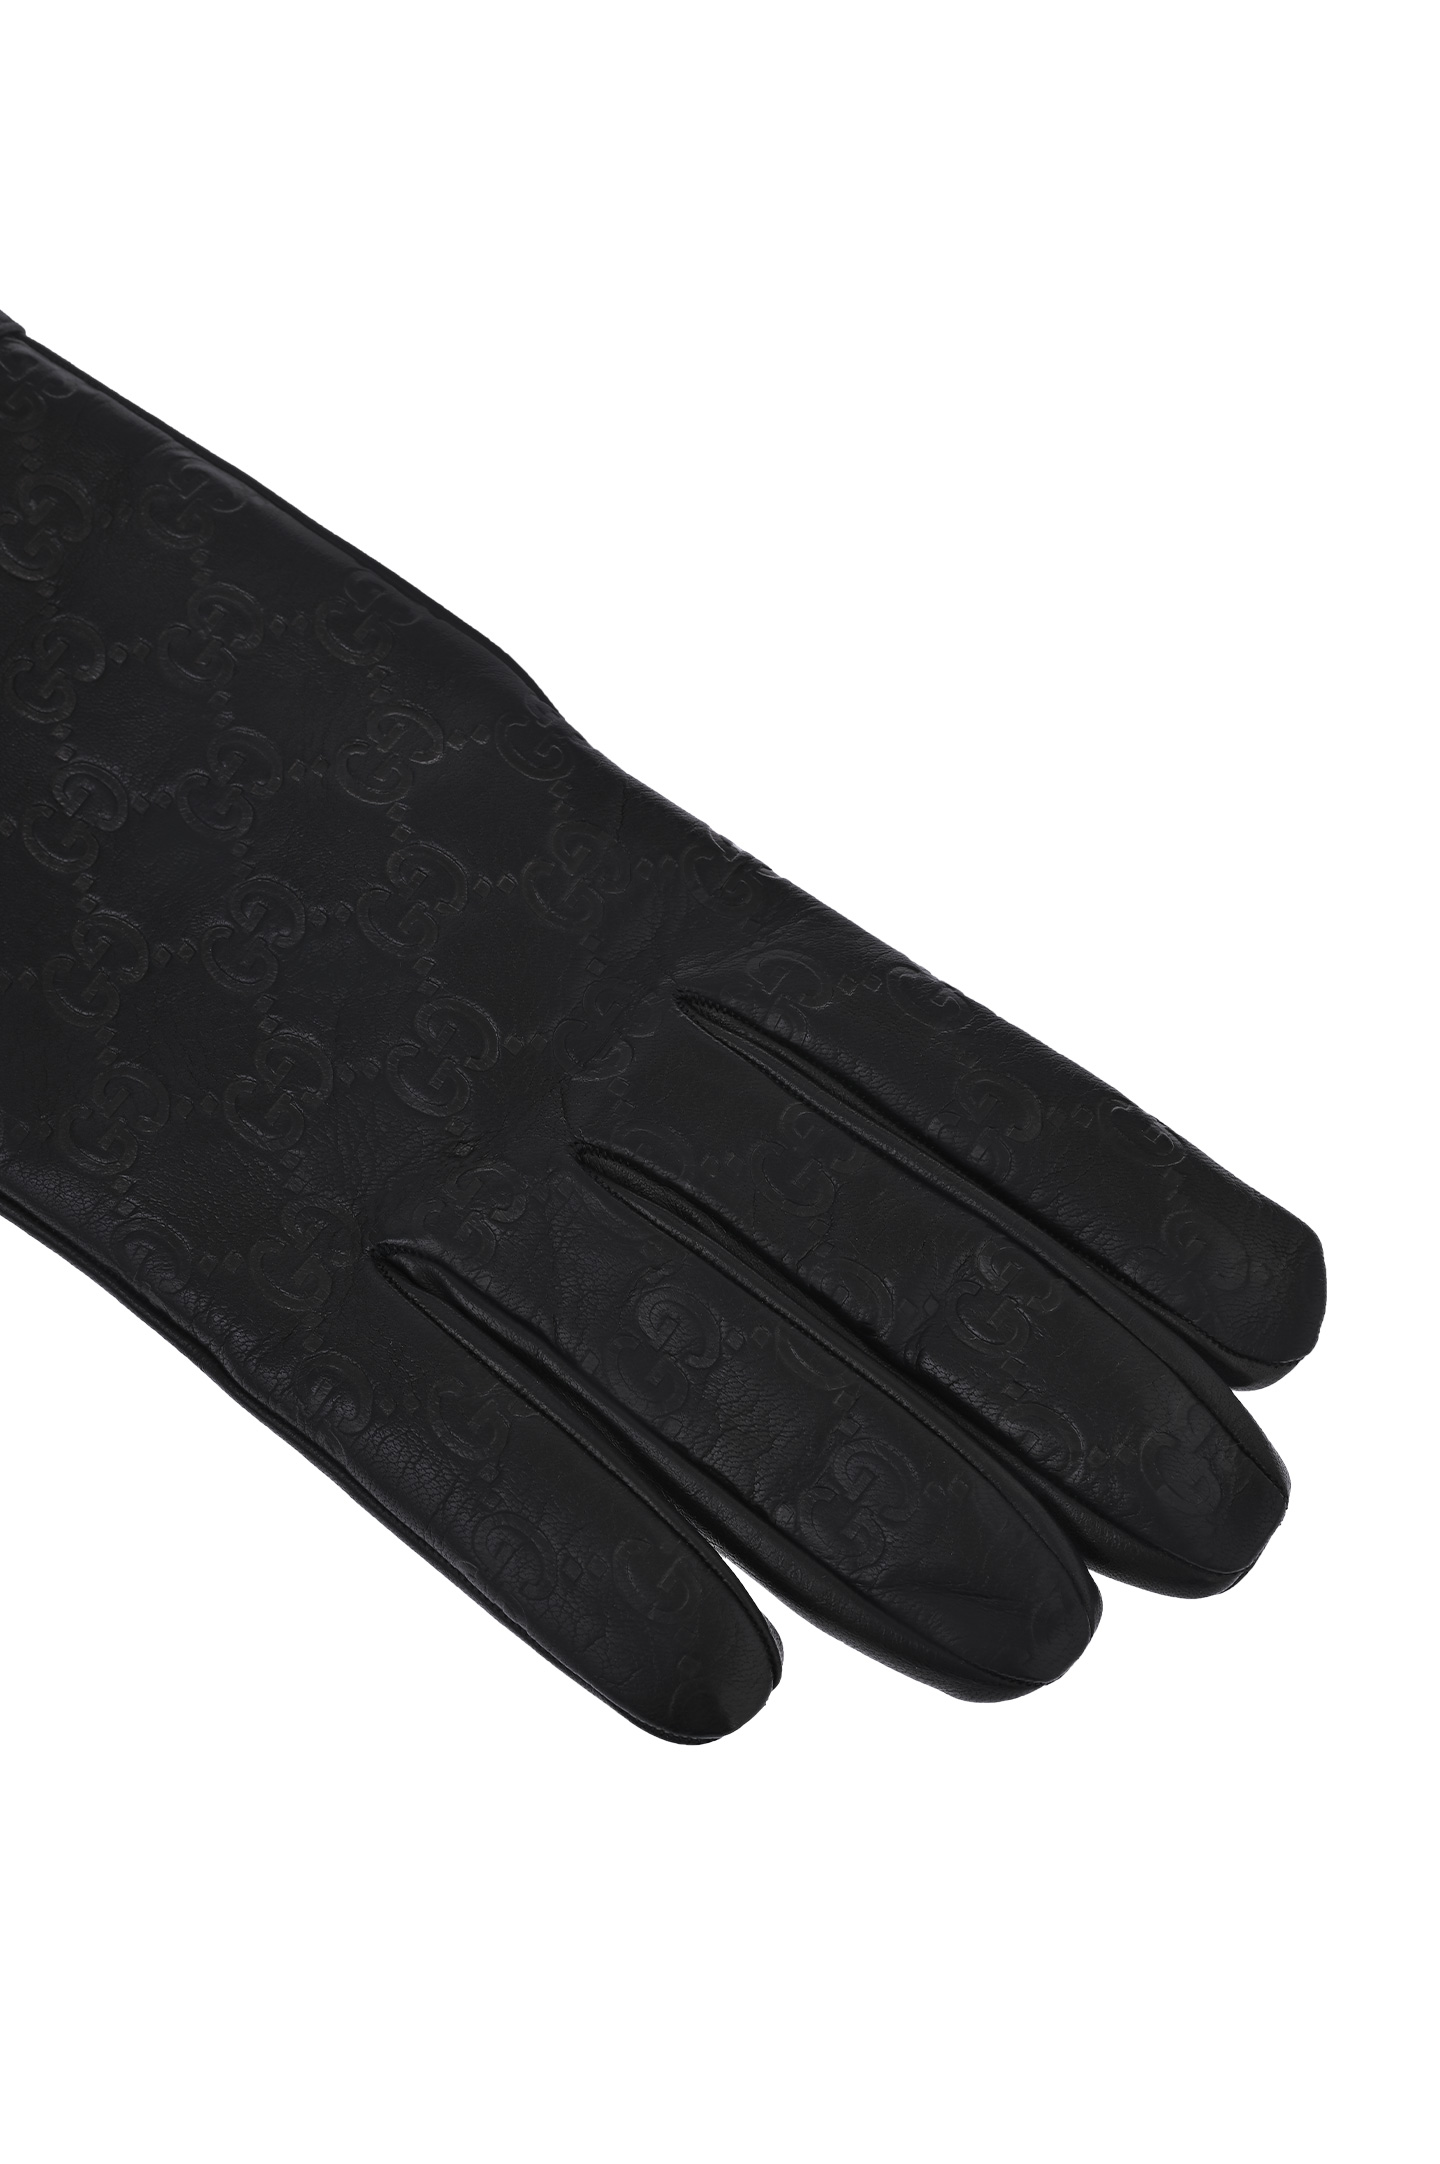 Перчатки GUCCI 434211 B6500, цвет: Черный, Мужской